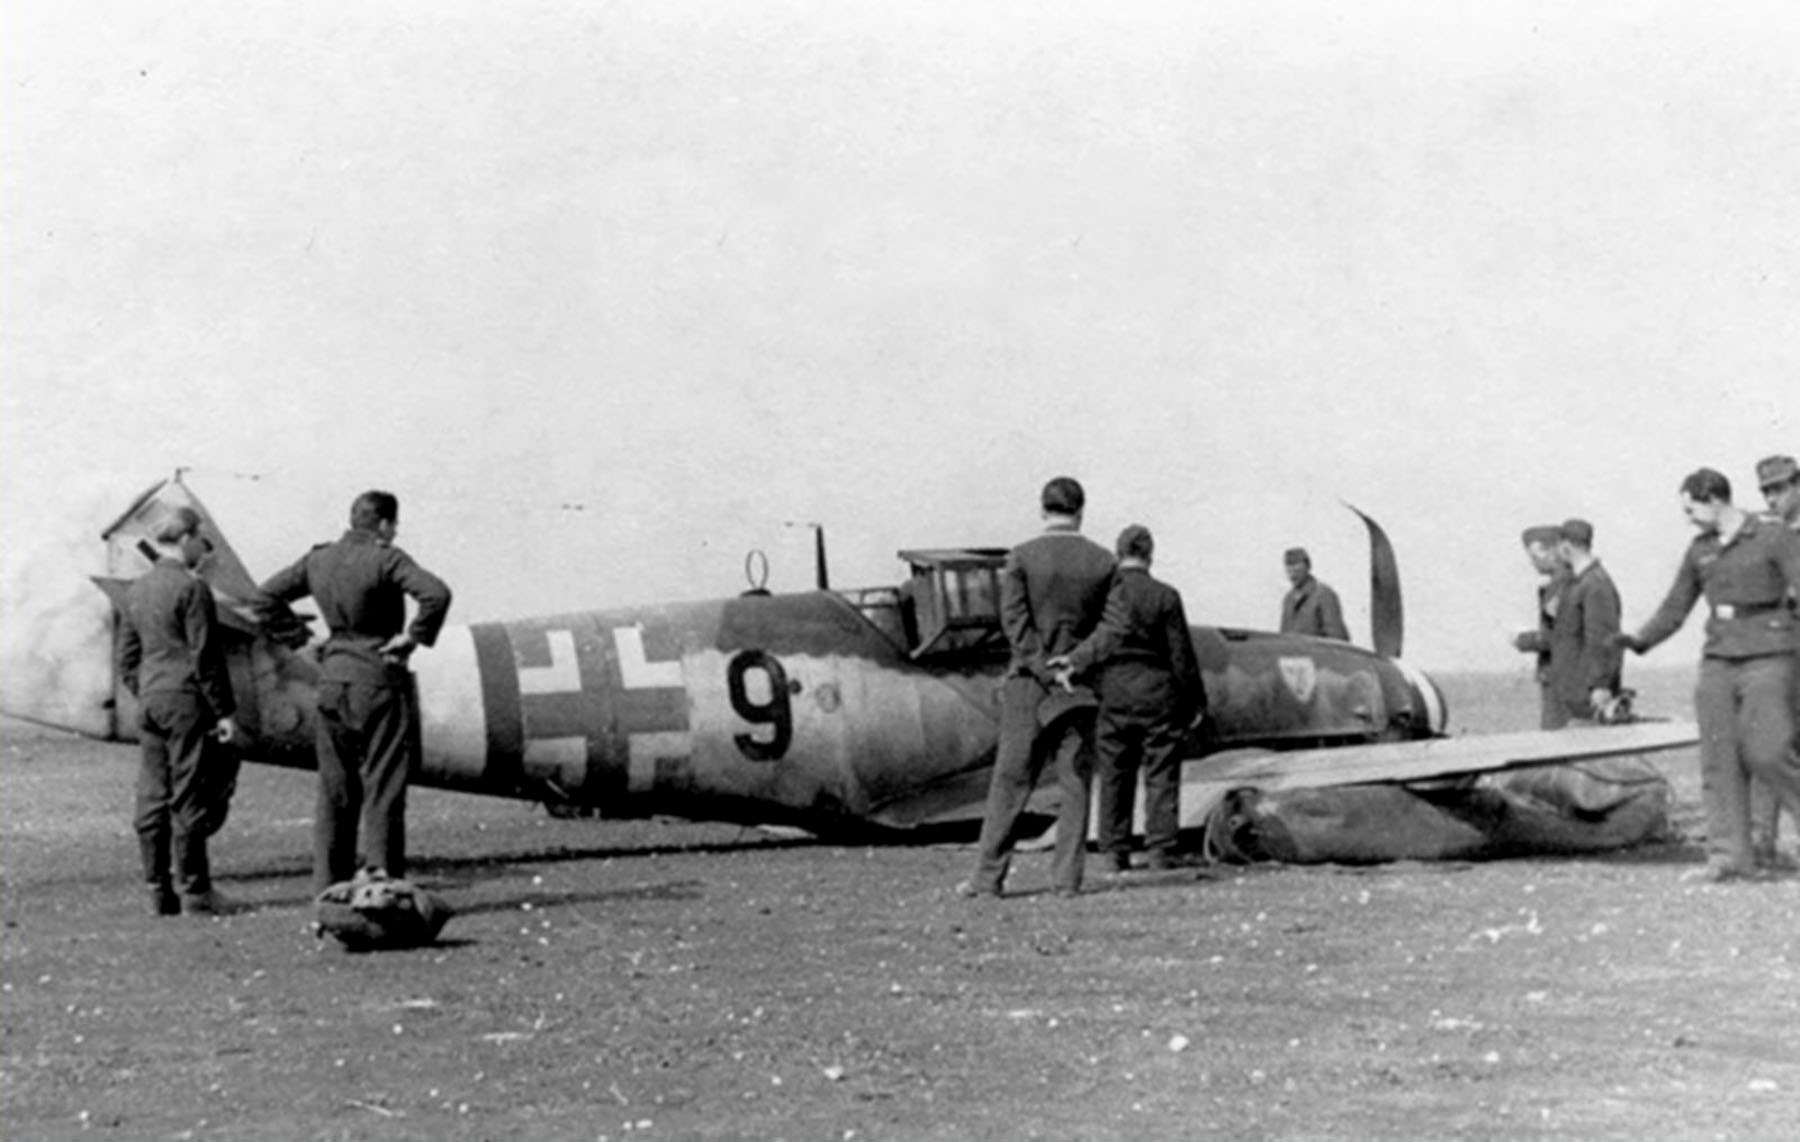 Messerschmitt Bf 109G6 JG3 Black 9 force landed 01